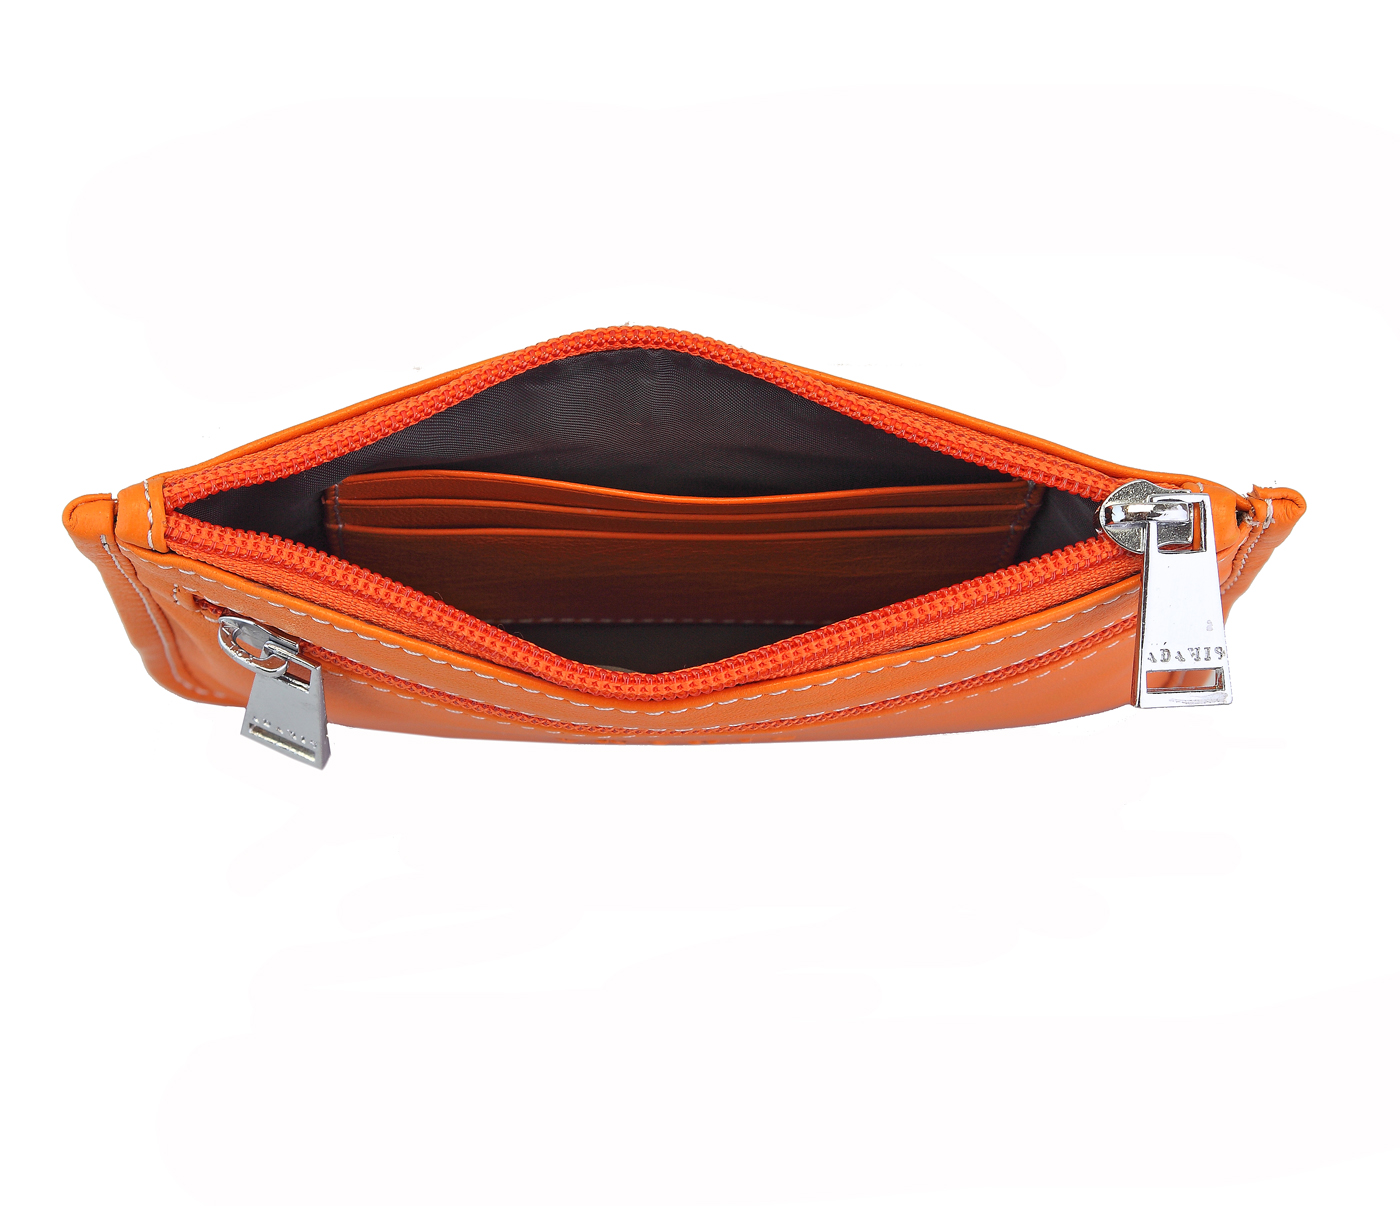 W228--Unisex Multi Purpose Pouch in Genuine Leather - Orange